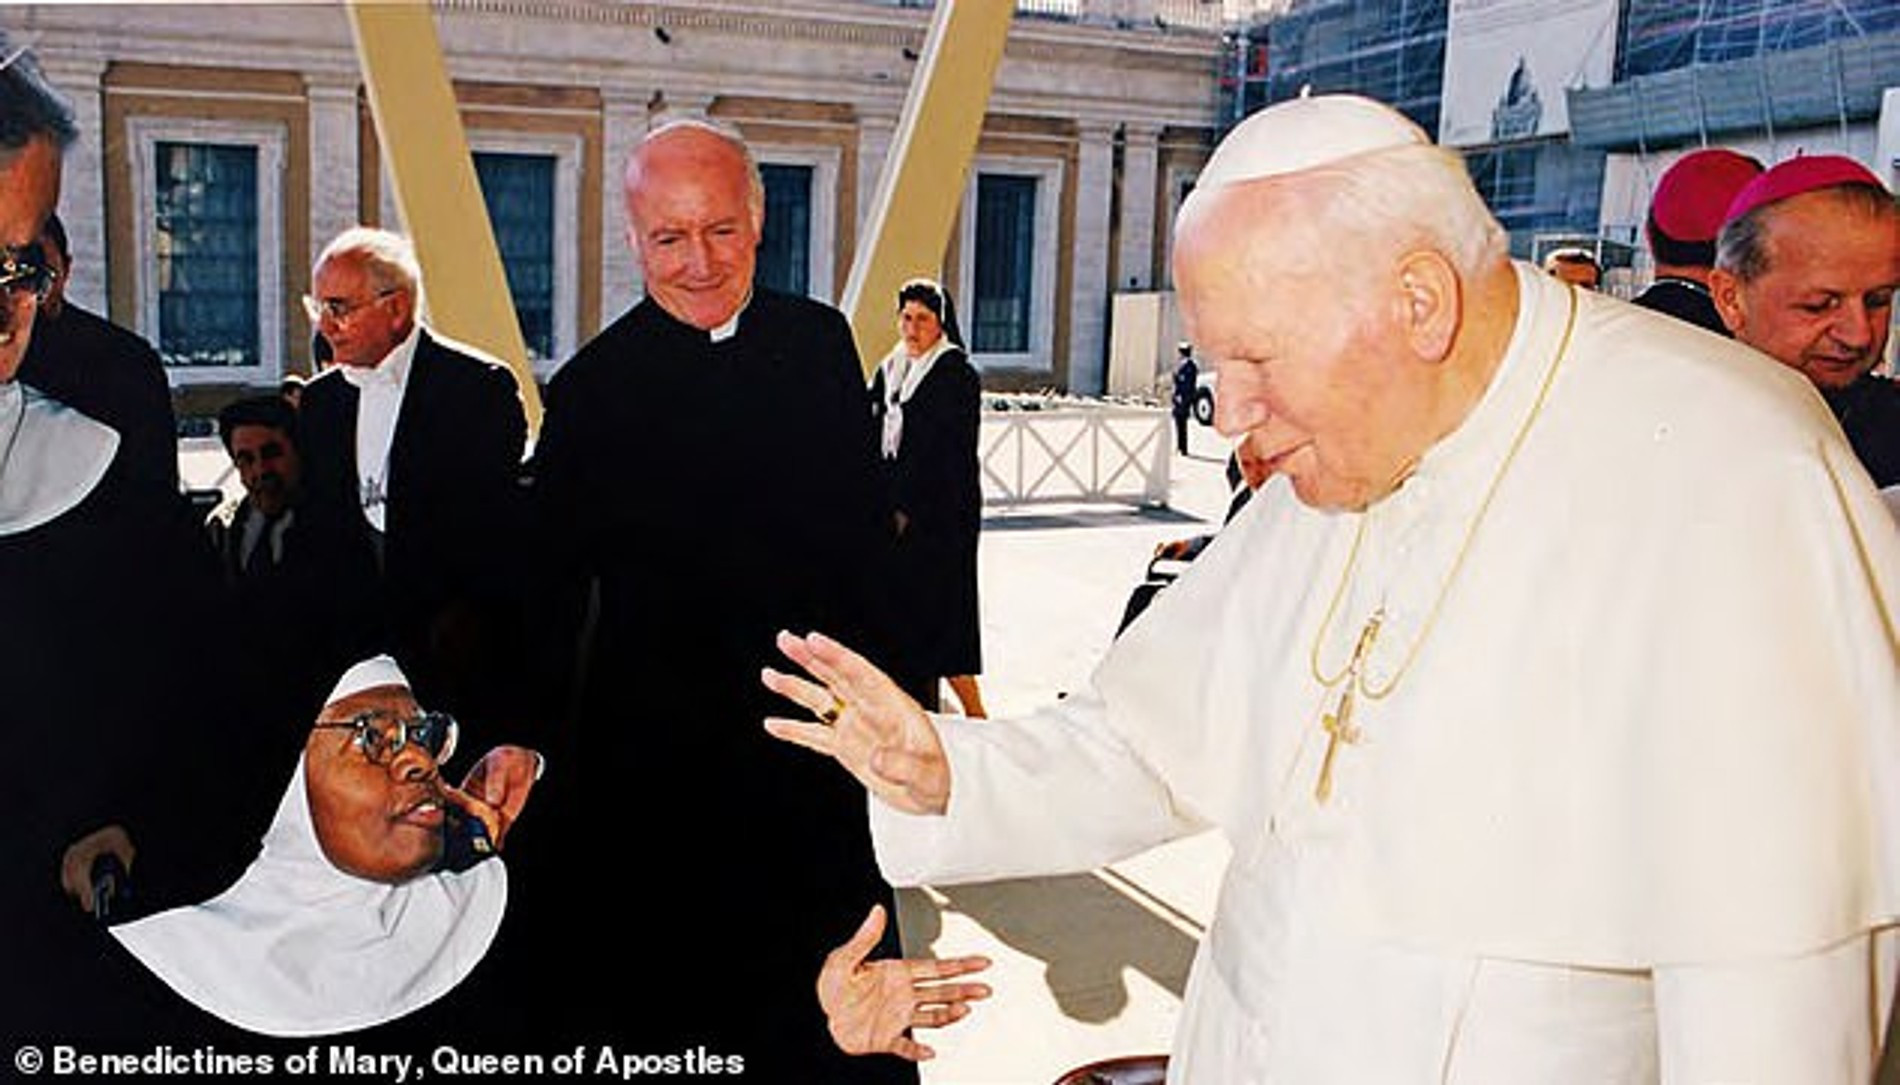 Сестра Вильгельмина на встрече с папой римским Иоанном Павлом II
Фото: Benedictines of Mary, Queen of Apostles